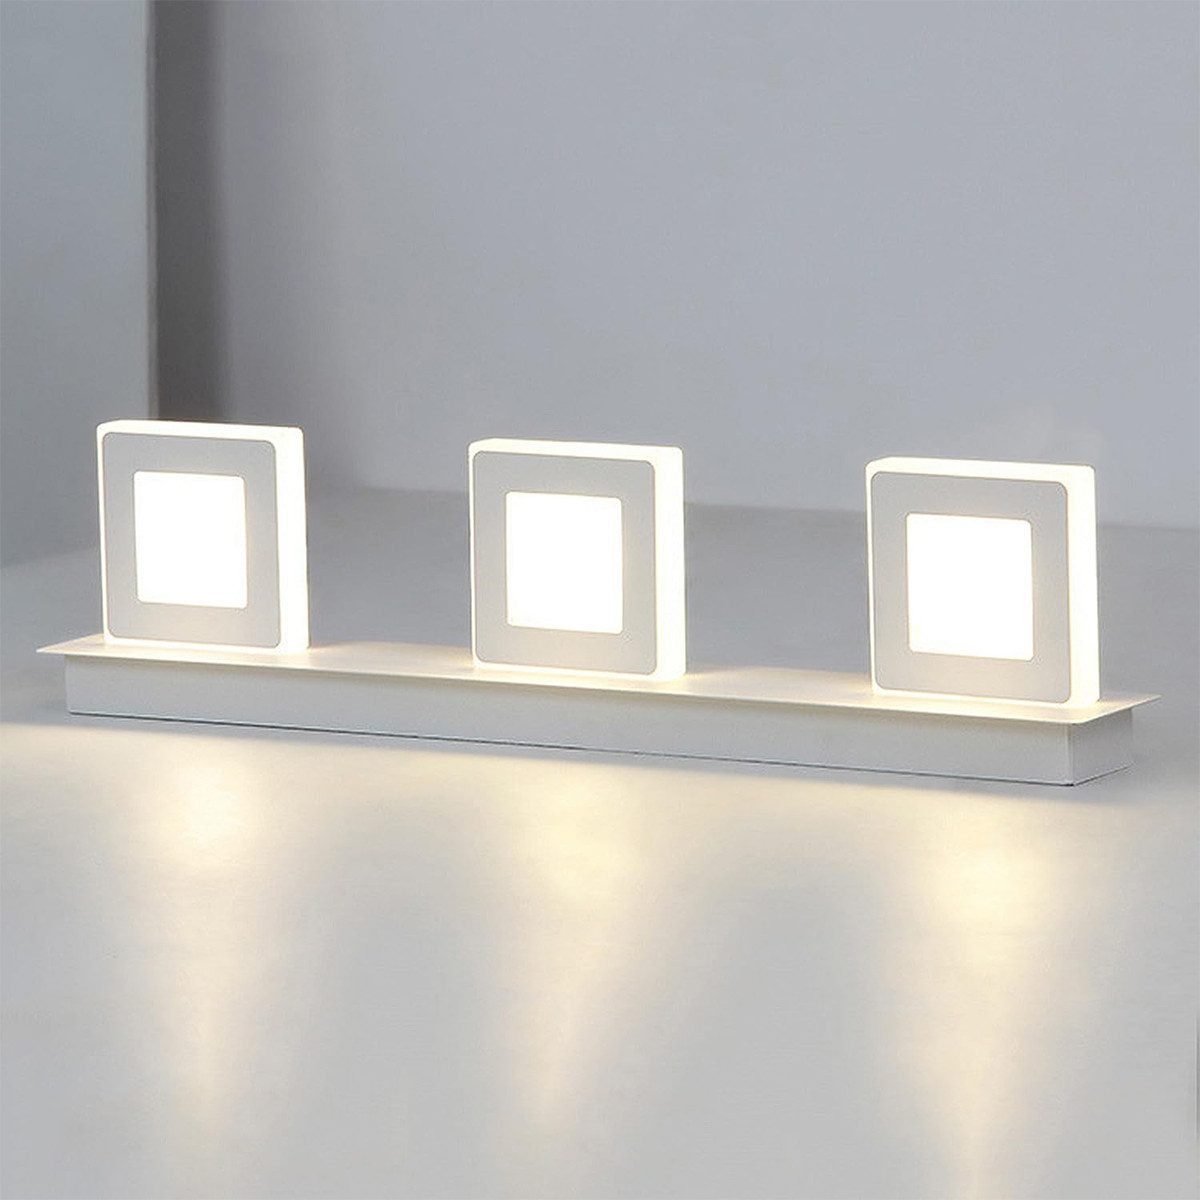 Jioson Spiegelleuchte 3 Köpfe LED Spiegelleuchte Spiegelleuchte, weißes Licht/warmes Licht/neutrales Licht, 48*13*7cm Drehbares dimmbares LED-Licht, 15W